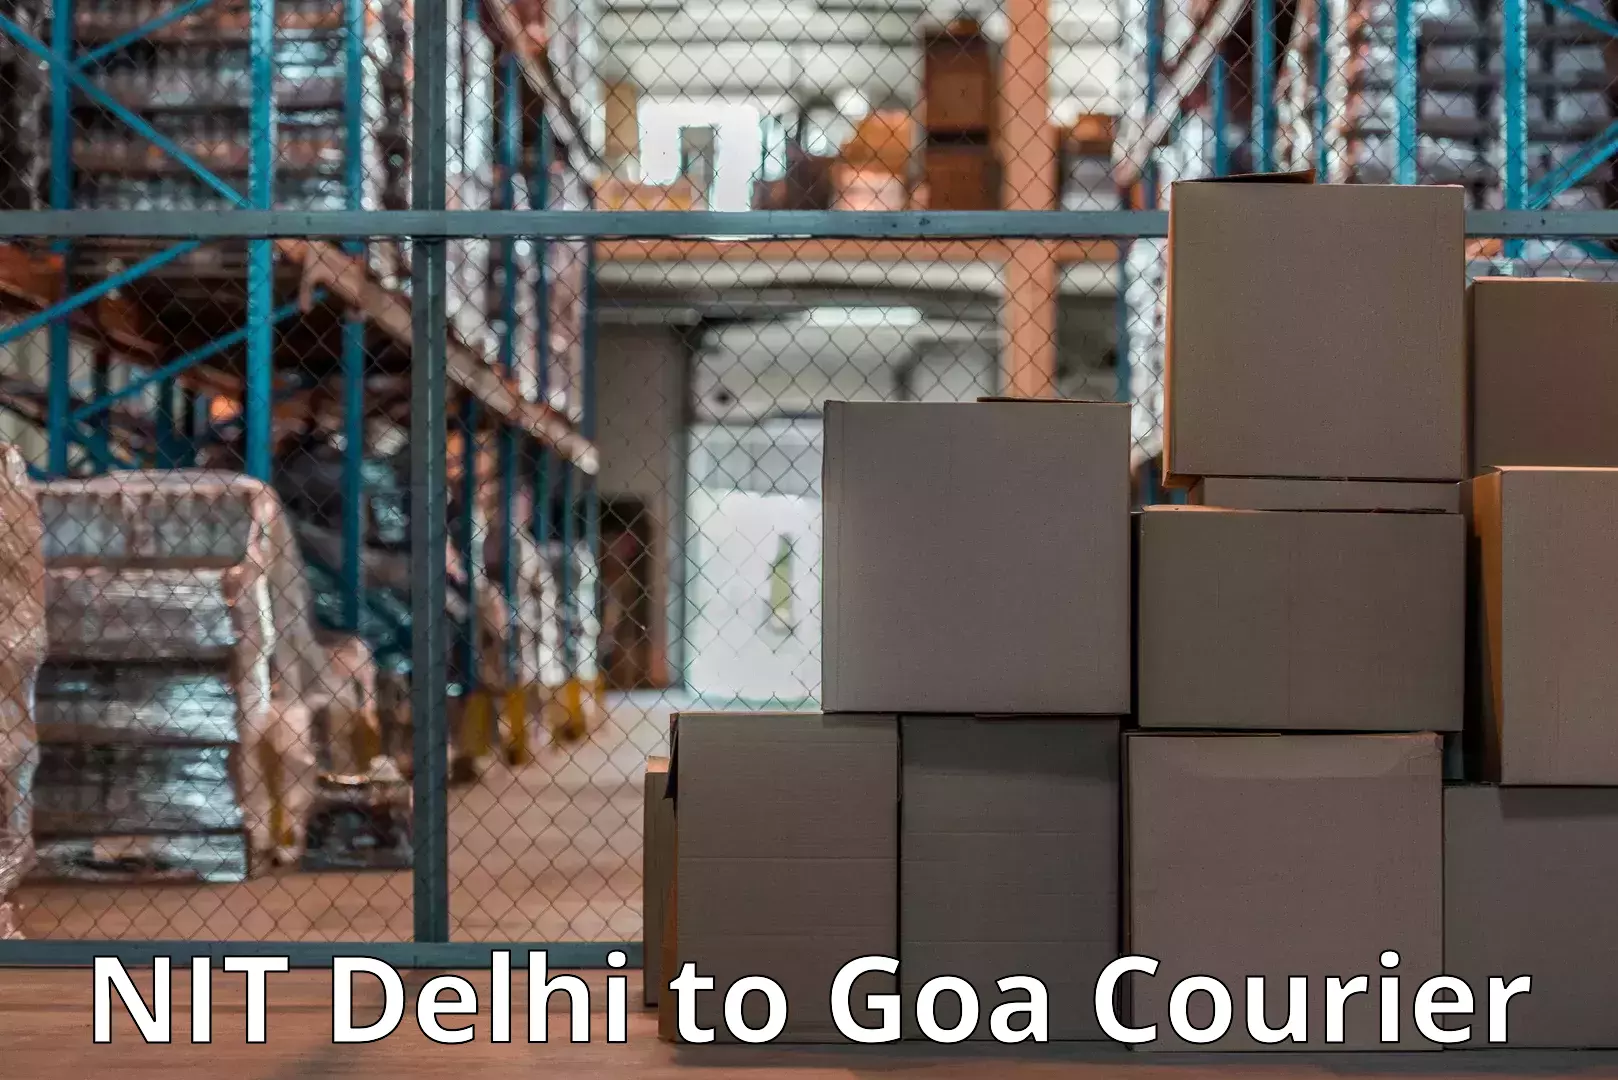 Furniture moving services NIT Delhi to Vasco da Gama